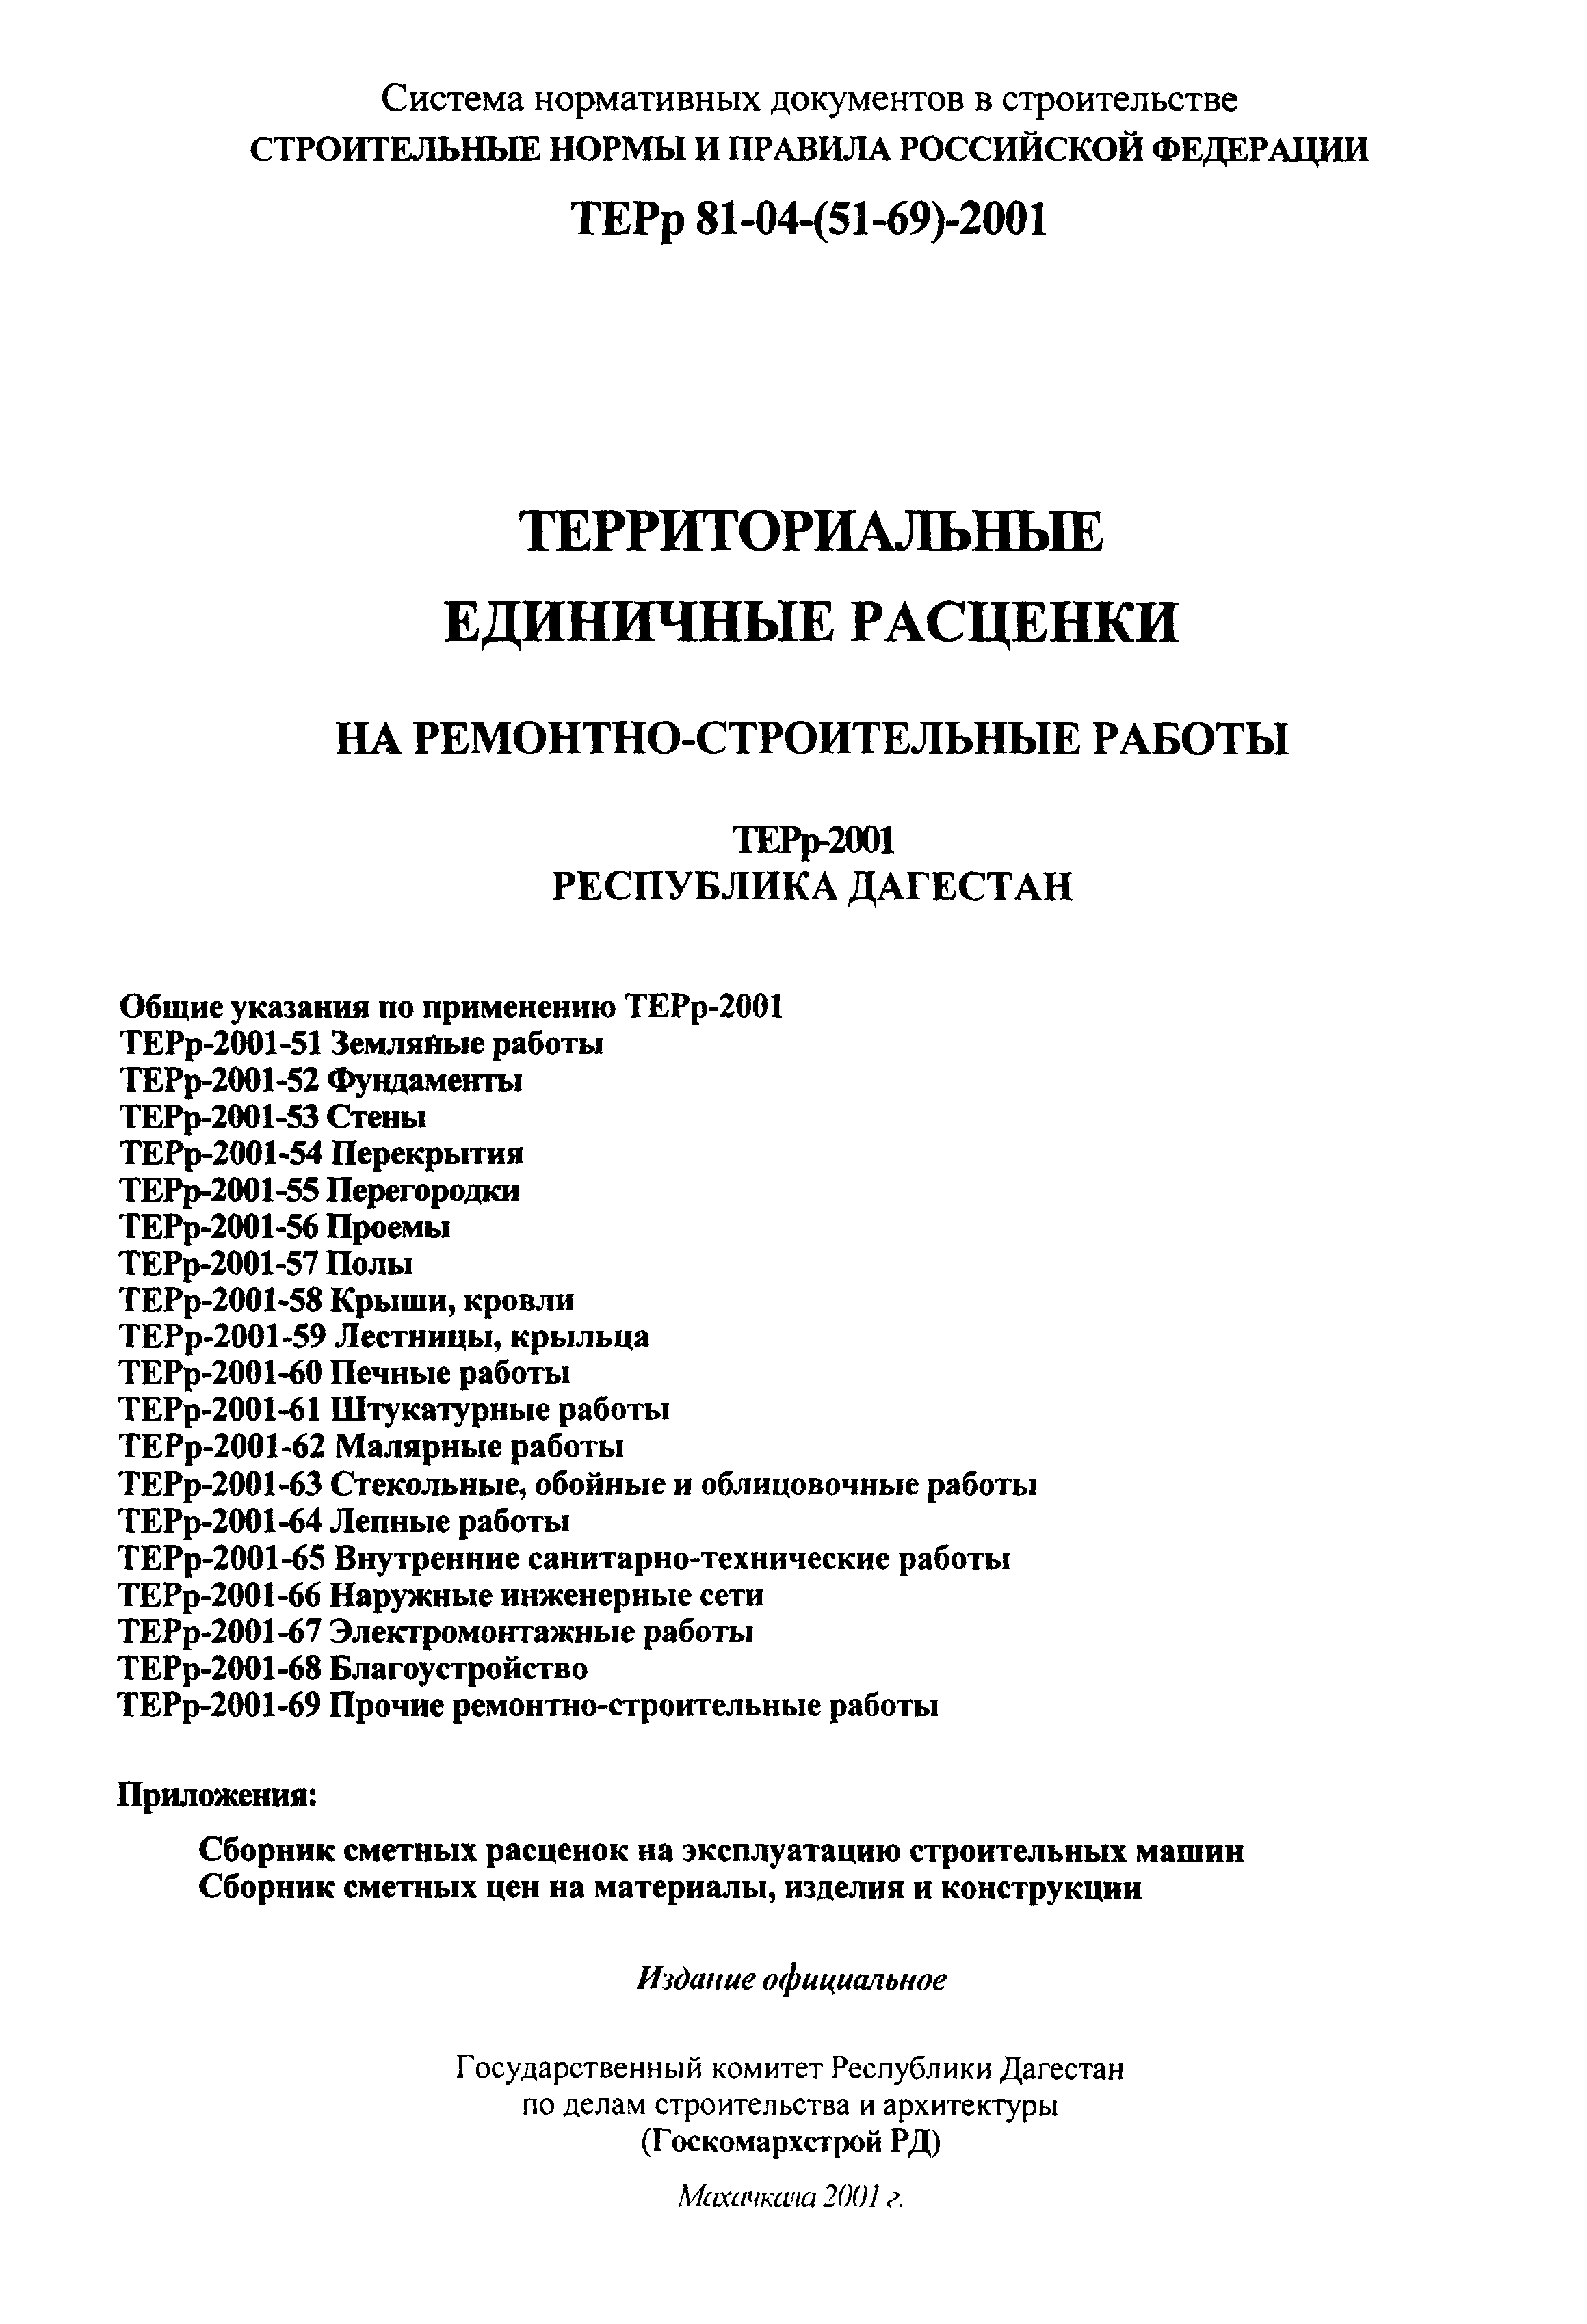 ТЕРр Республика Дагестан 2001